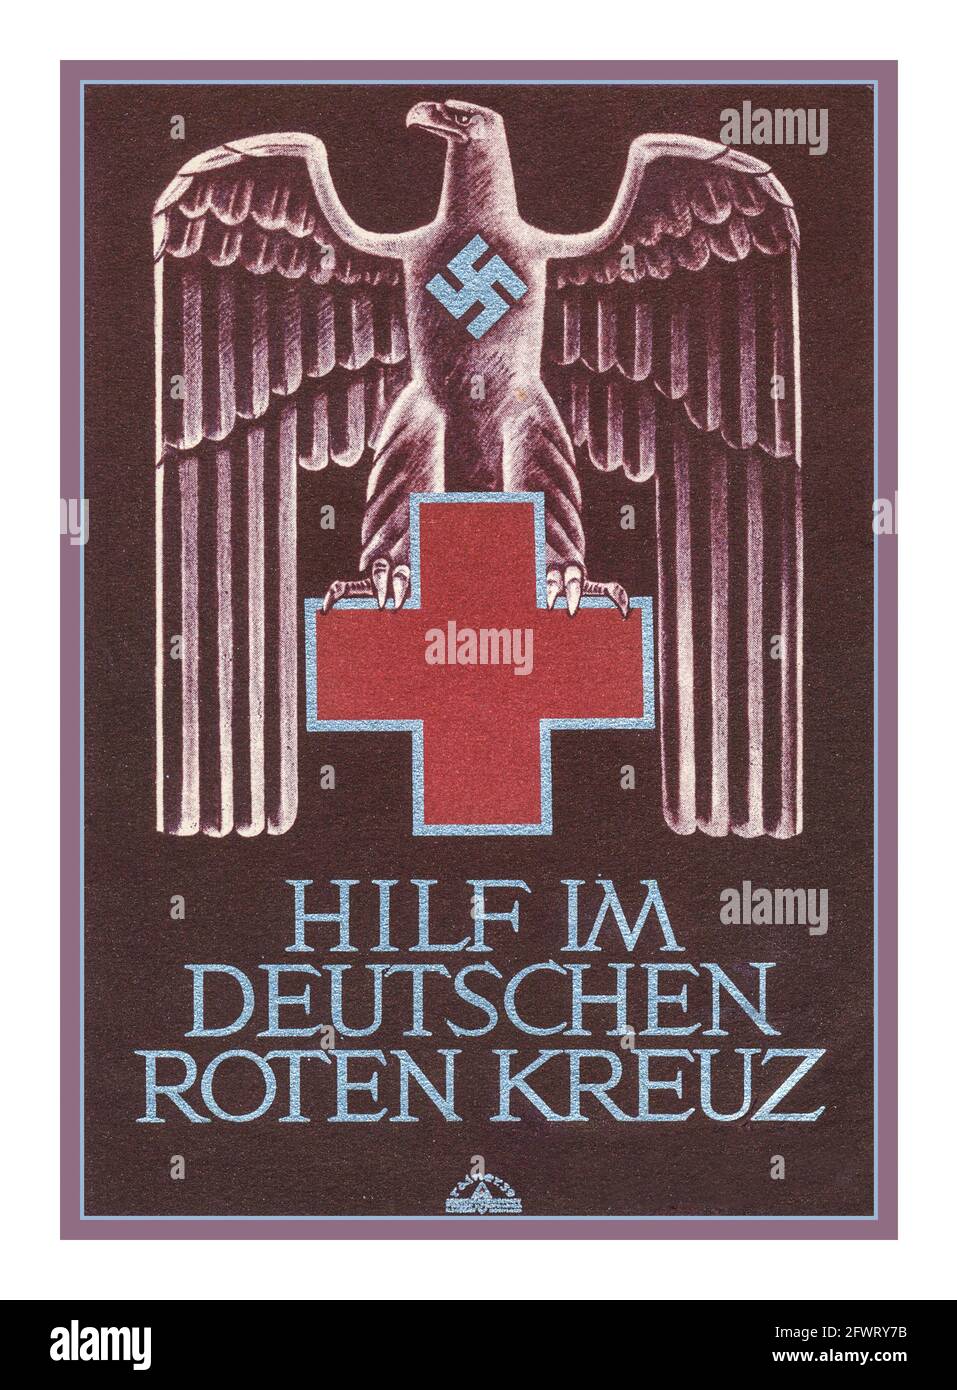 1930 Croce Rossa nazista Propaganda Poster Card seconda Guerra Mondiale "Aiuto nella Croce Rossa tedesca" 'hilf im deutschen roten kreuz' Illustrazione dell'Aquila tedesca con Swastika e Croce Rossa Foto Stock